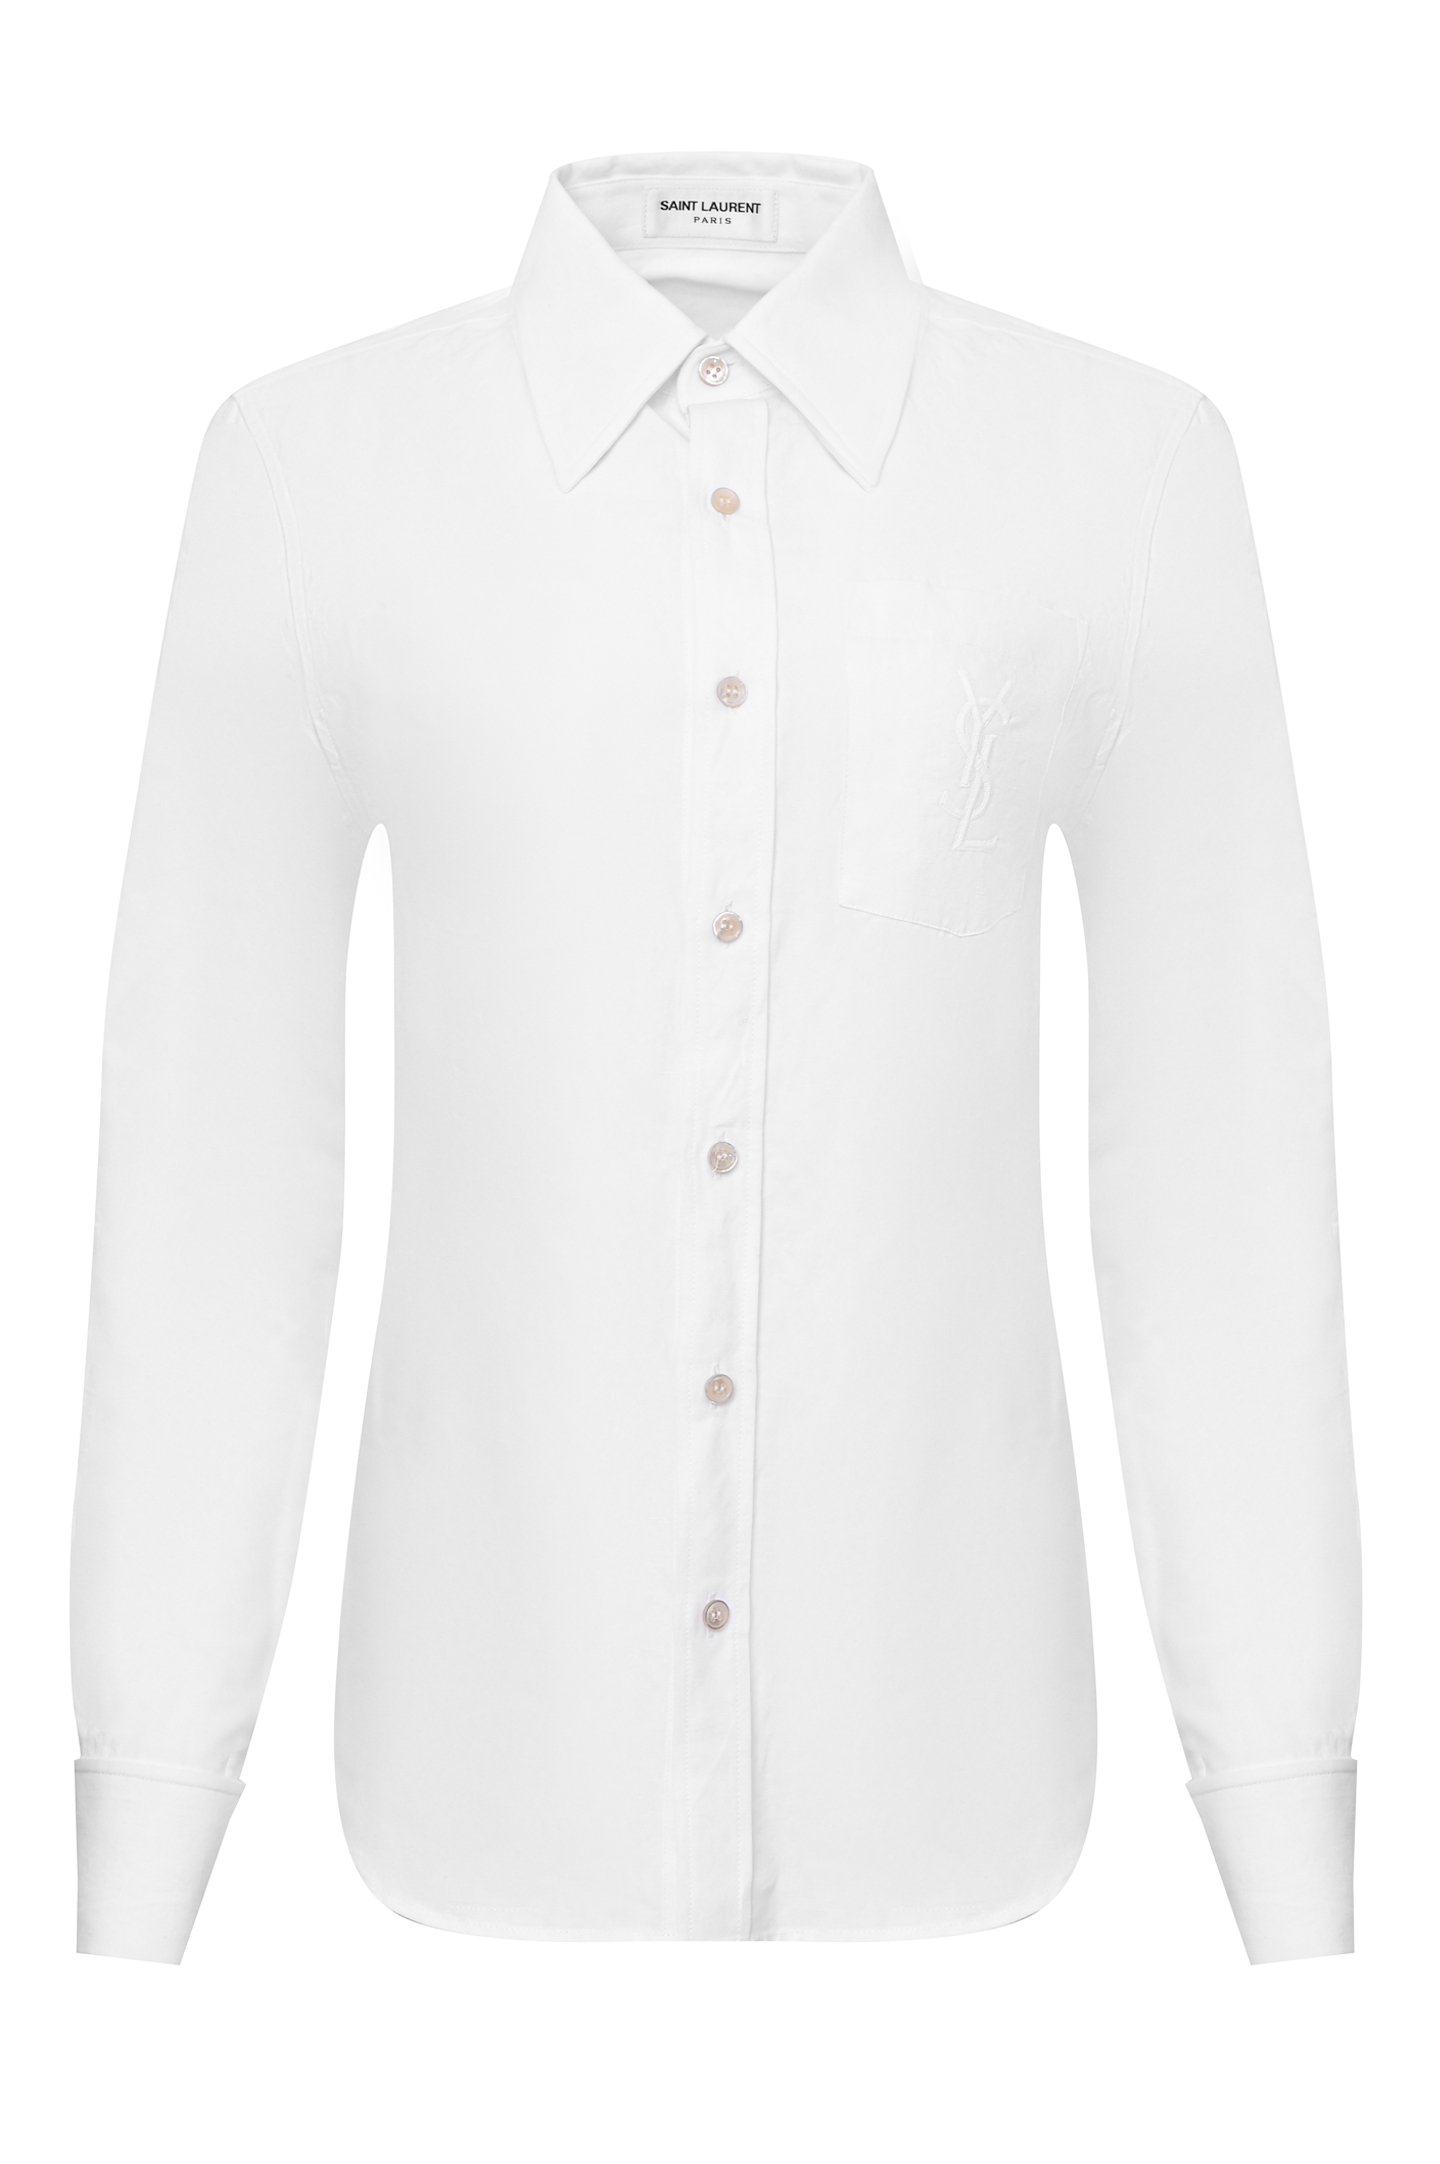 Рубашка SAINT LAURENT 671299 Y3D50, цвет: Белый, Женский